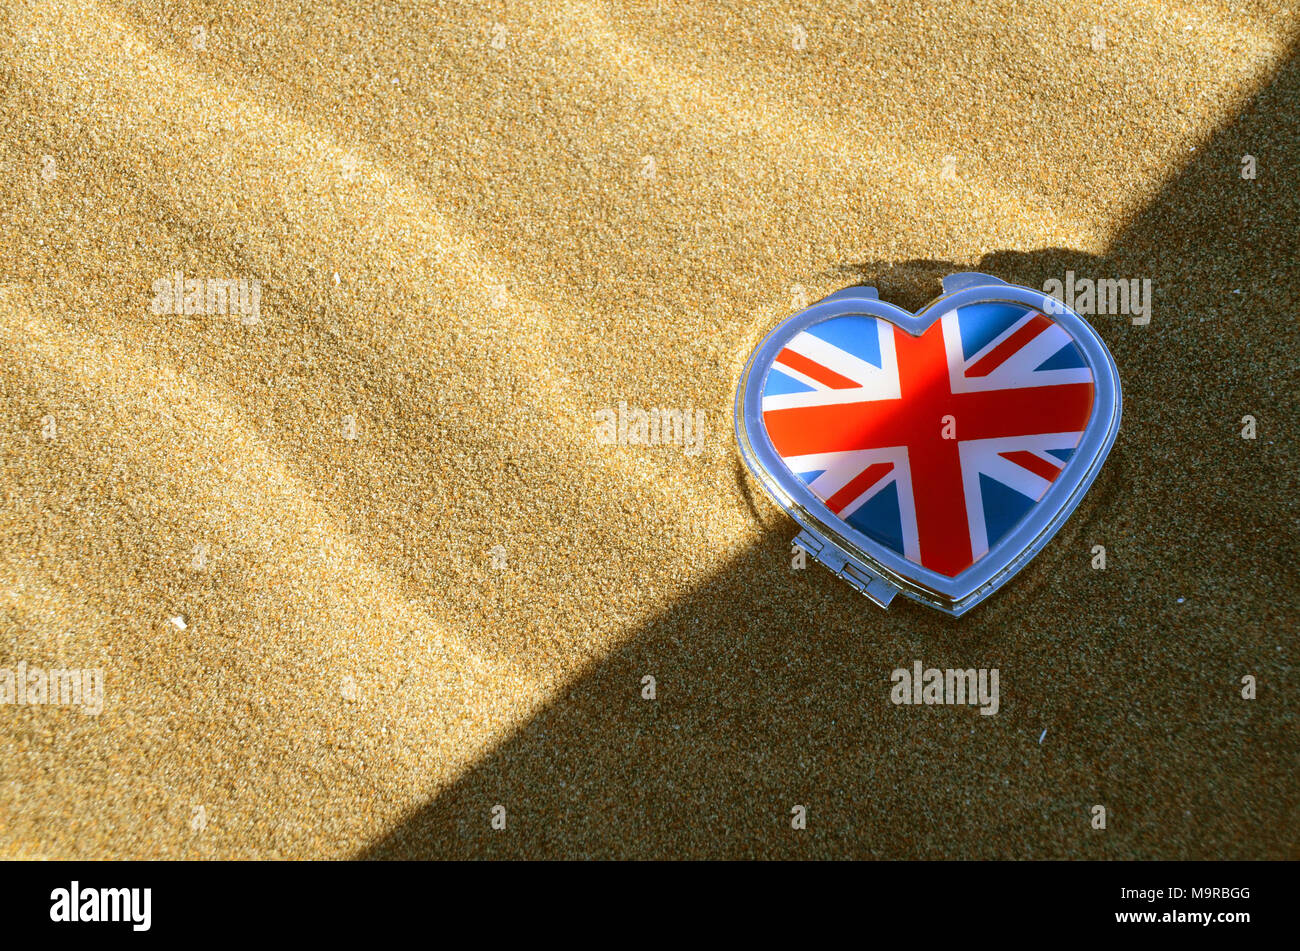 Une Union jack le couvert d'un étain en forme de cœur allongé sur une plage de sable. Banque D'Images